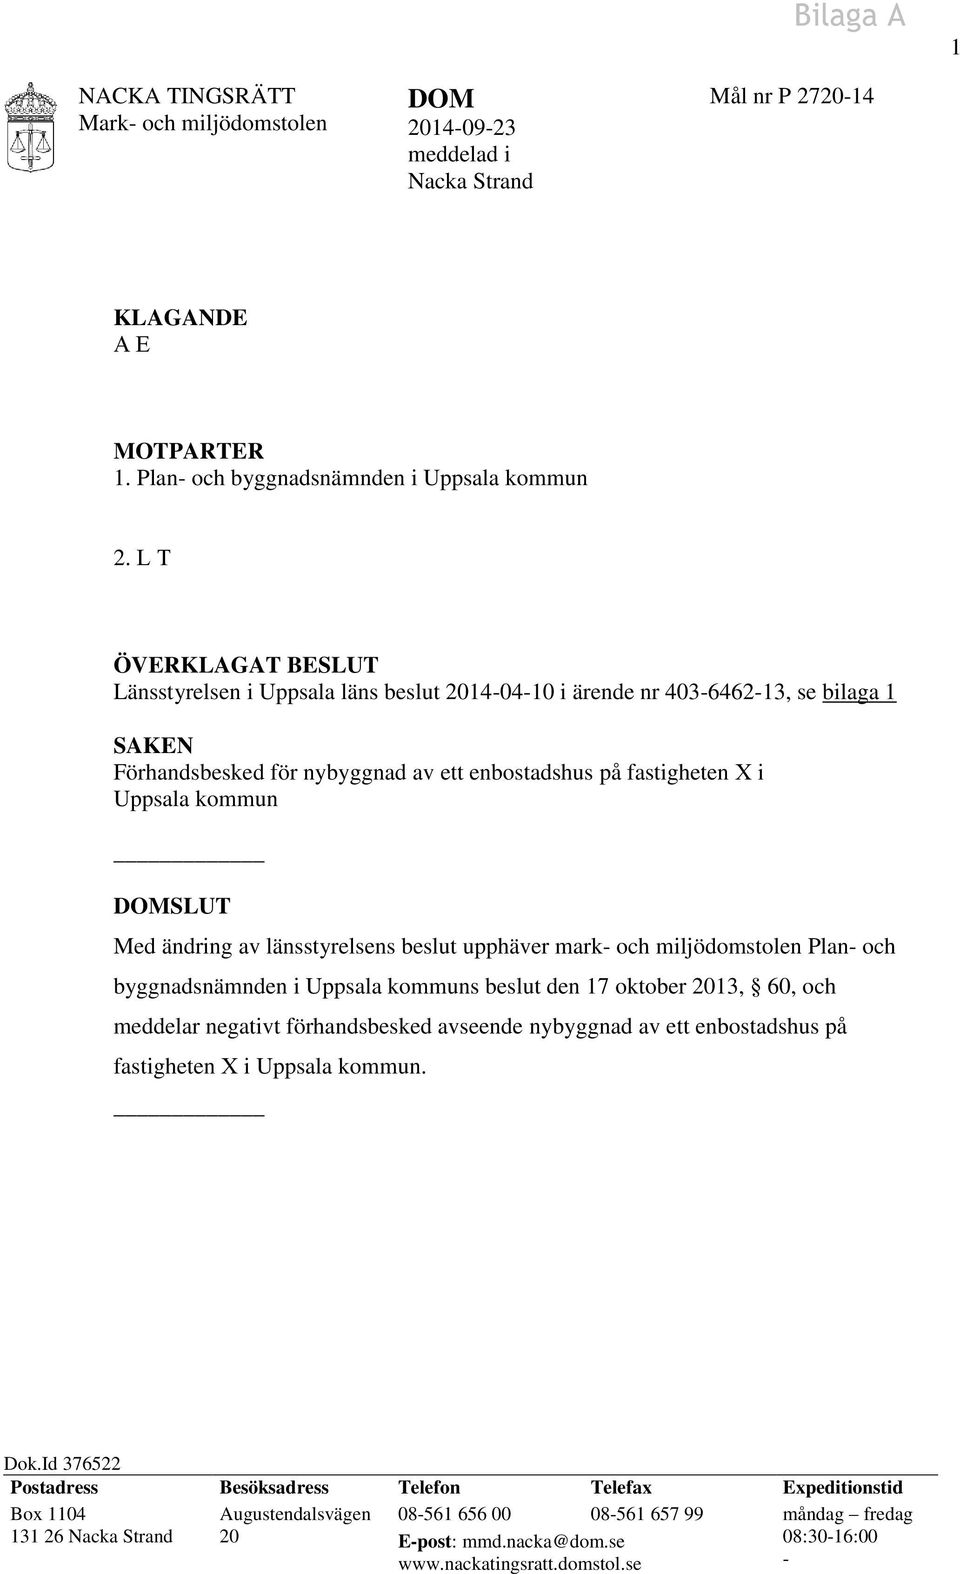 DOMSLUT Med ändring av länsstyrelsens beslut upphäver mark- och miljödomstolen Plan- och byggnadsnämnden i Uppsala kommuns beslut den 17 oktober 2013, 60, och meddelar negativt förhandsbesked